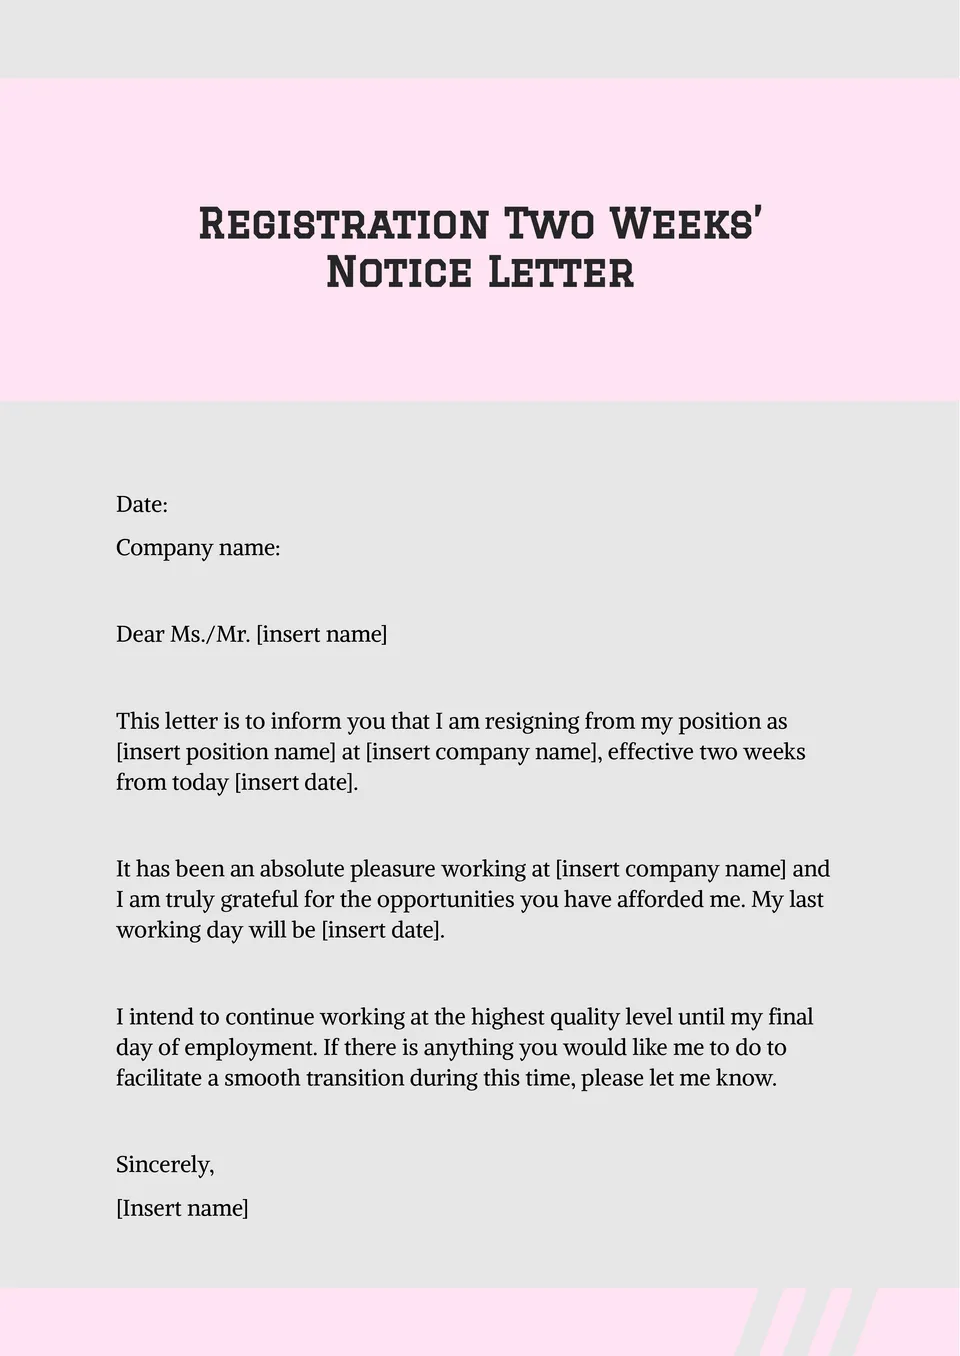 Registration 2 Week Notice Letter Template